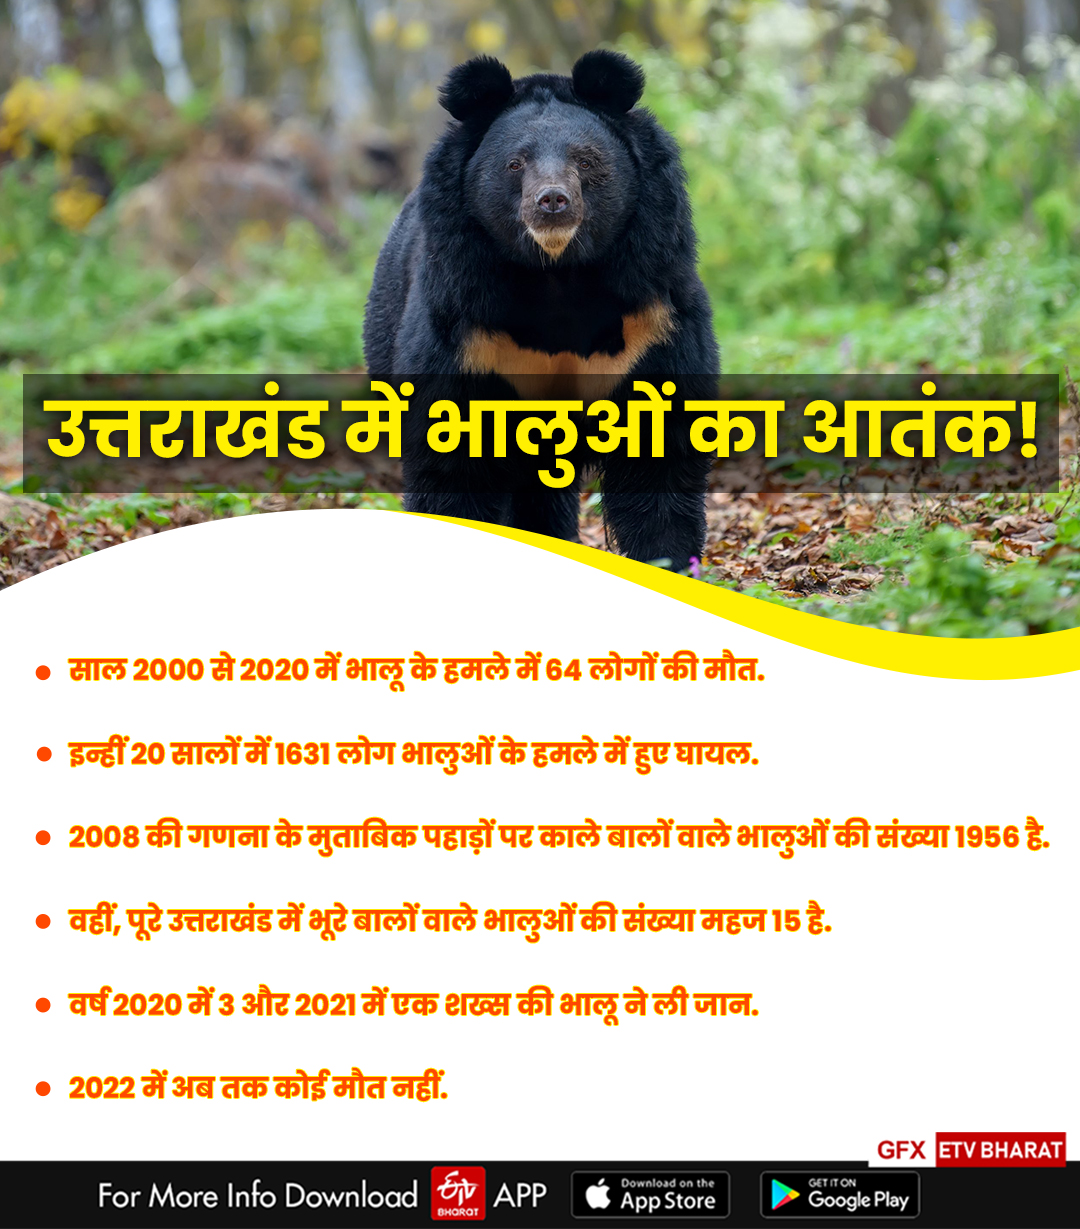 Bear attacks increase in Uttarakhand